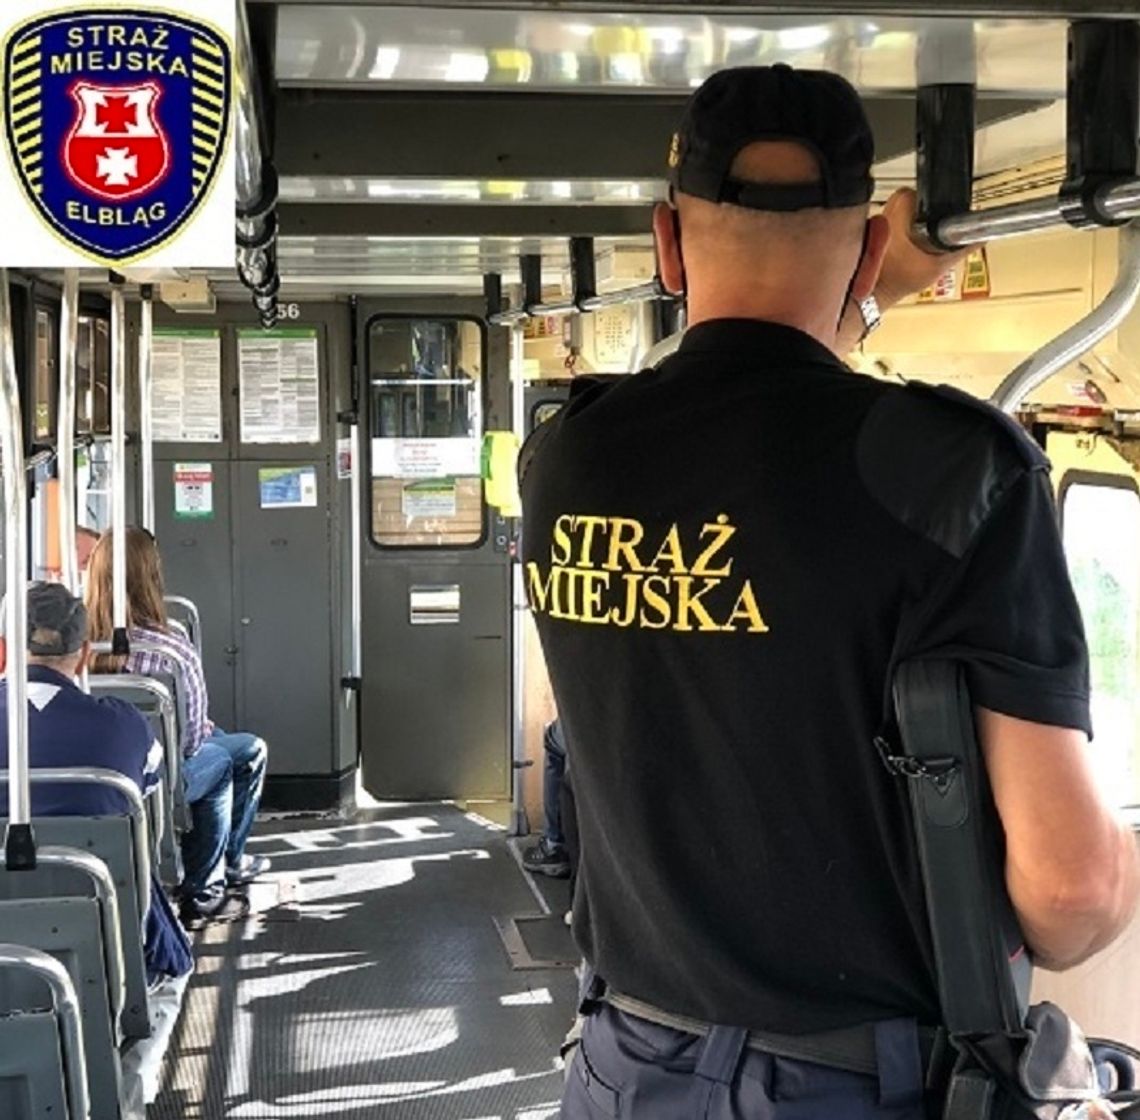 Uwaga! Ruszyły kontrole elbląskiej Straży Miejskiej w autobusach i tramwajach